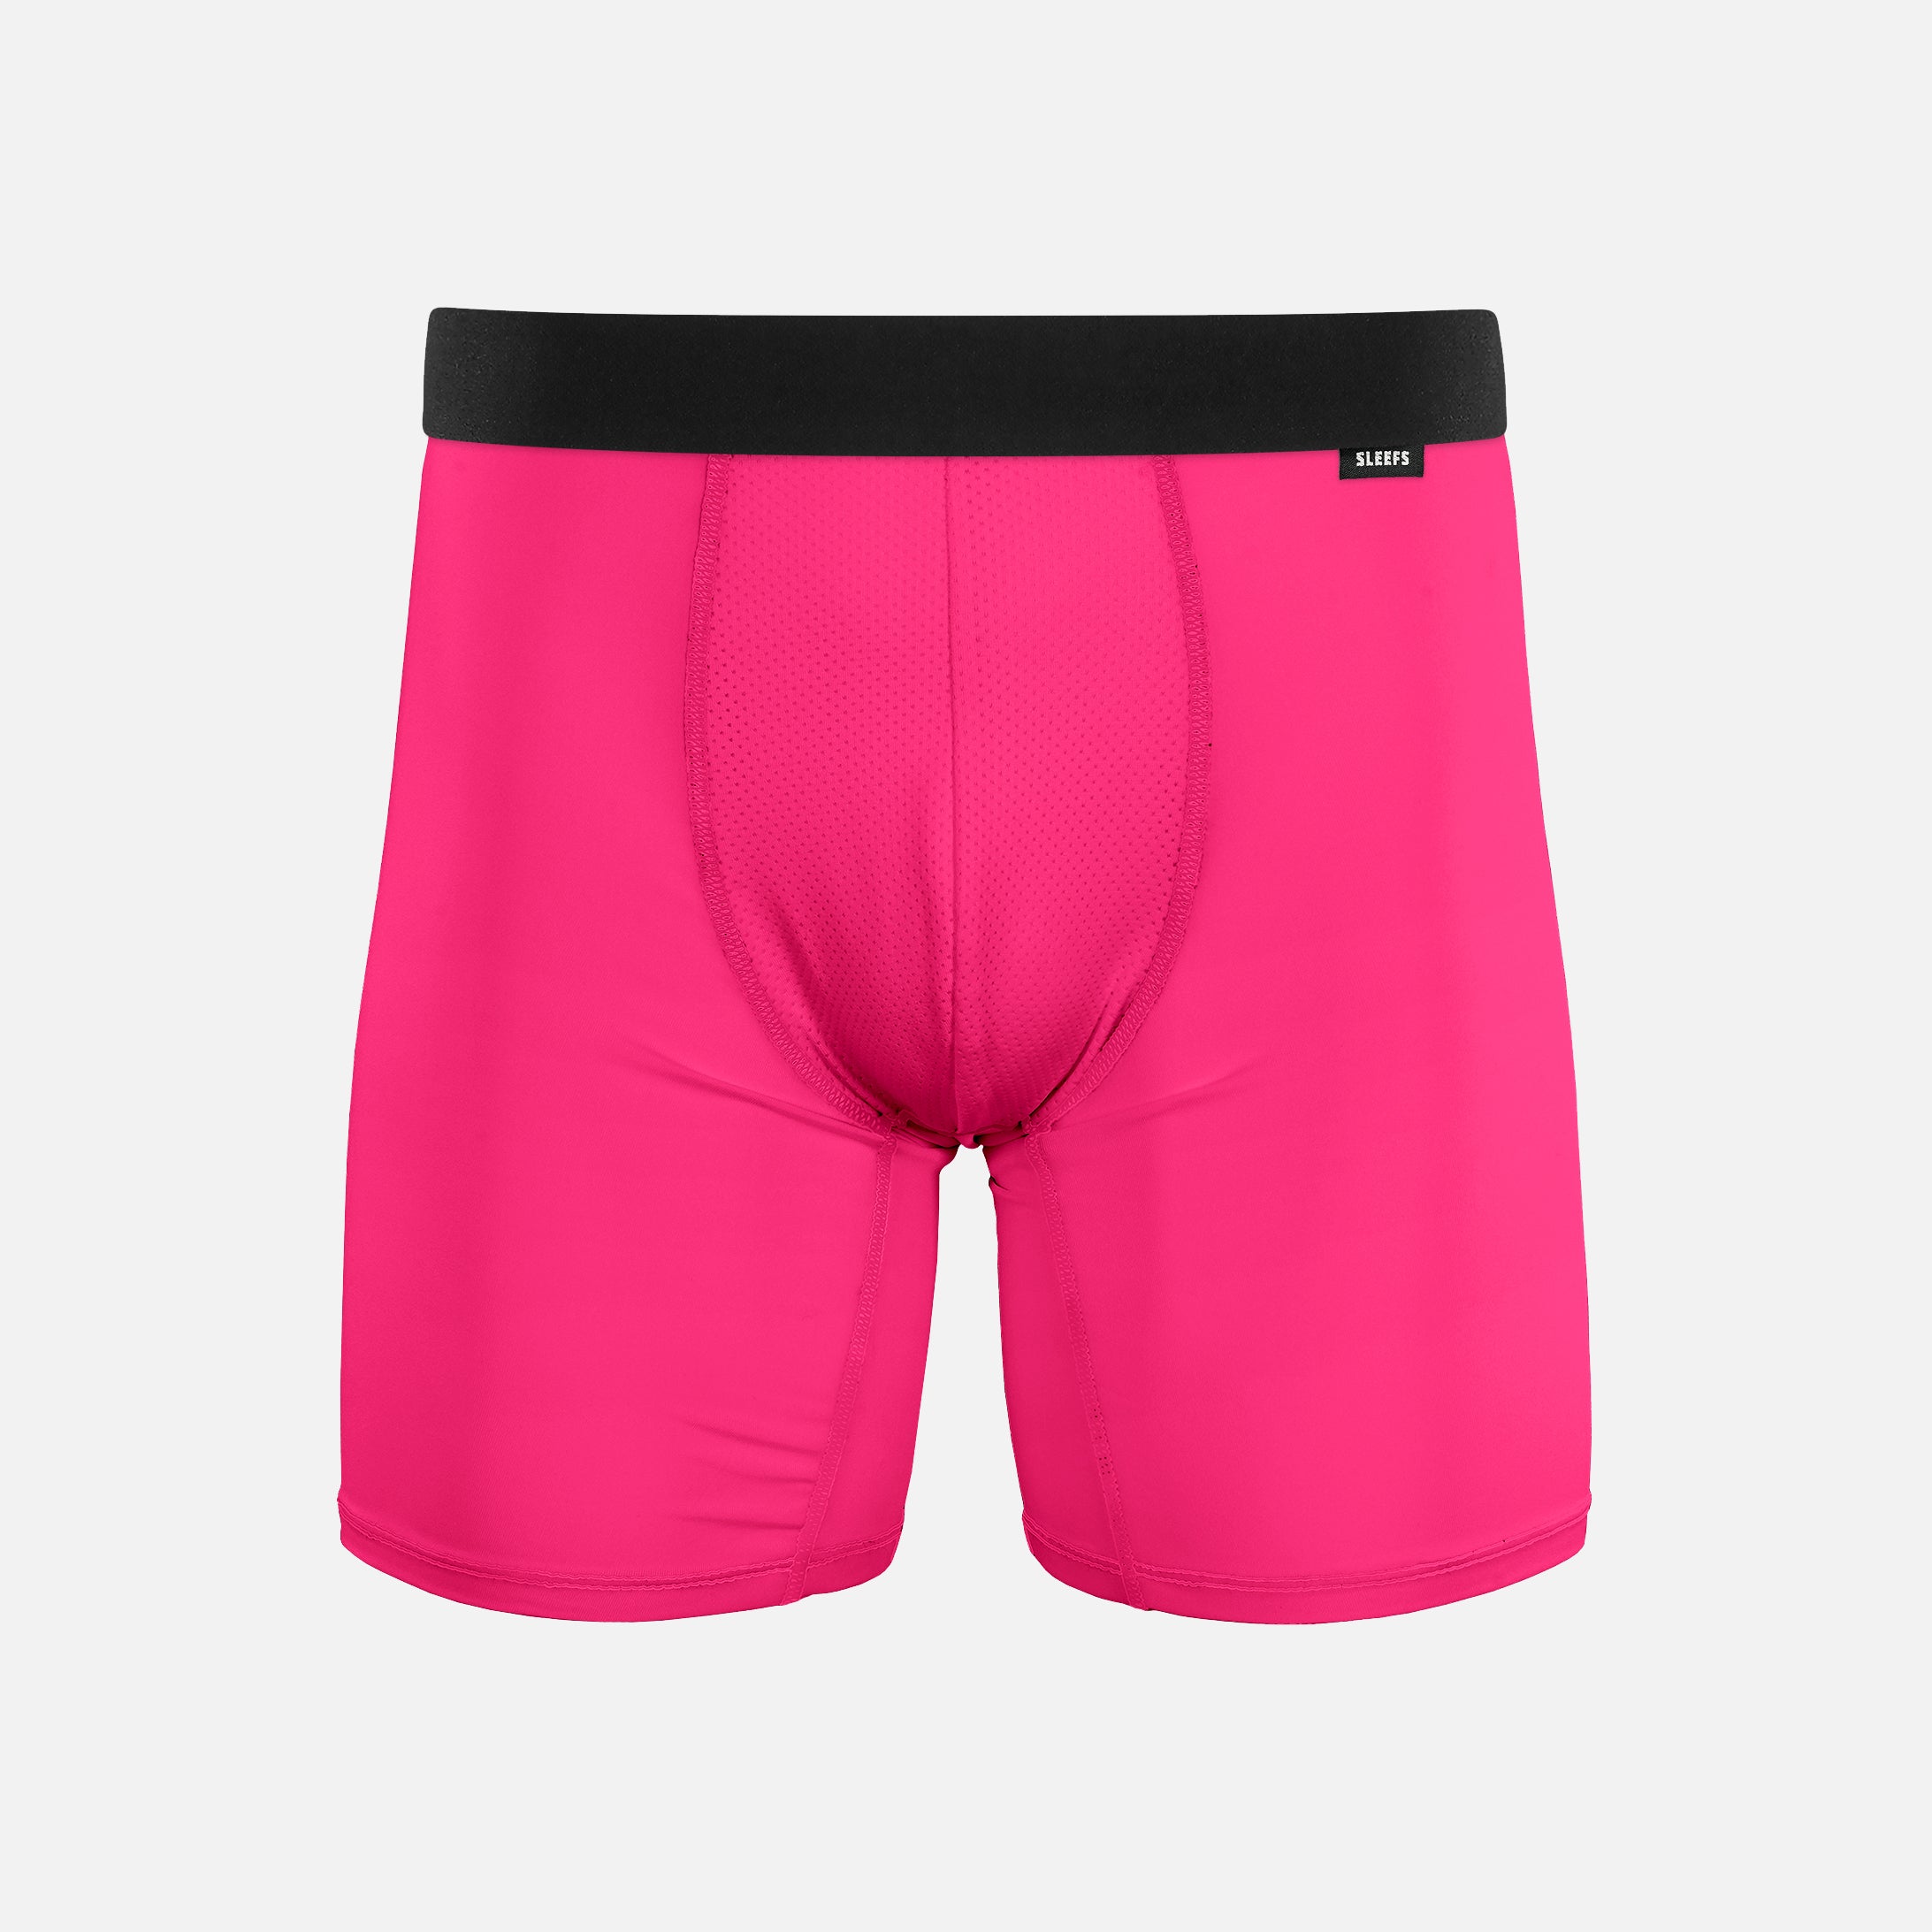 Hue Pink Men's Underwear – SLEEFS